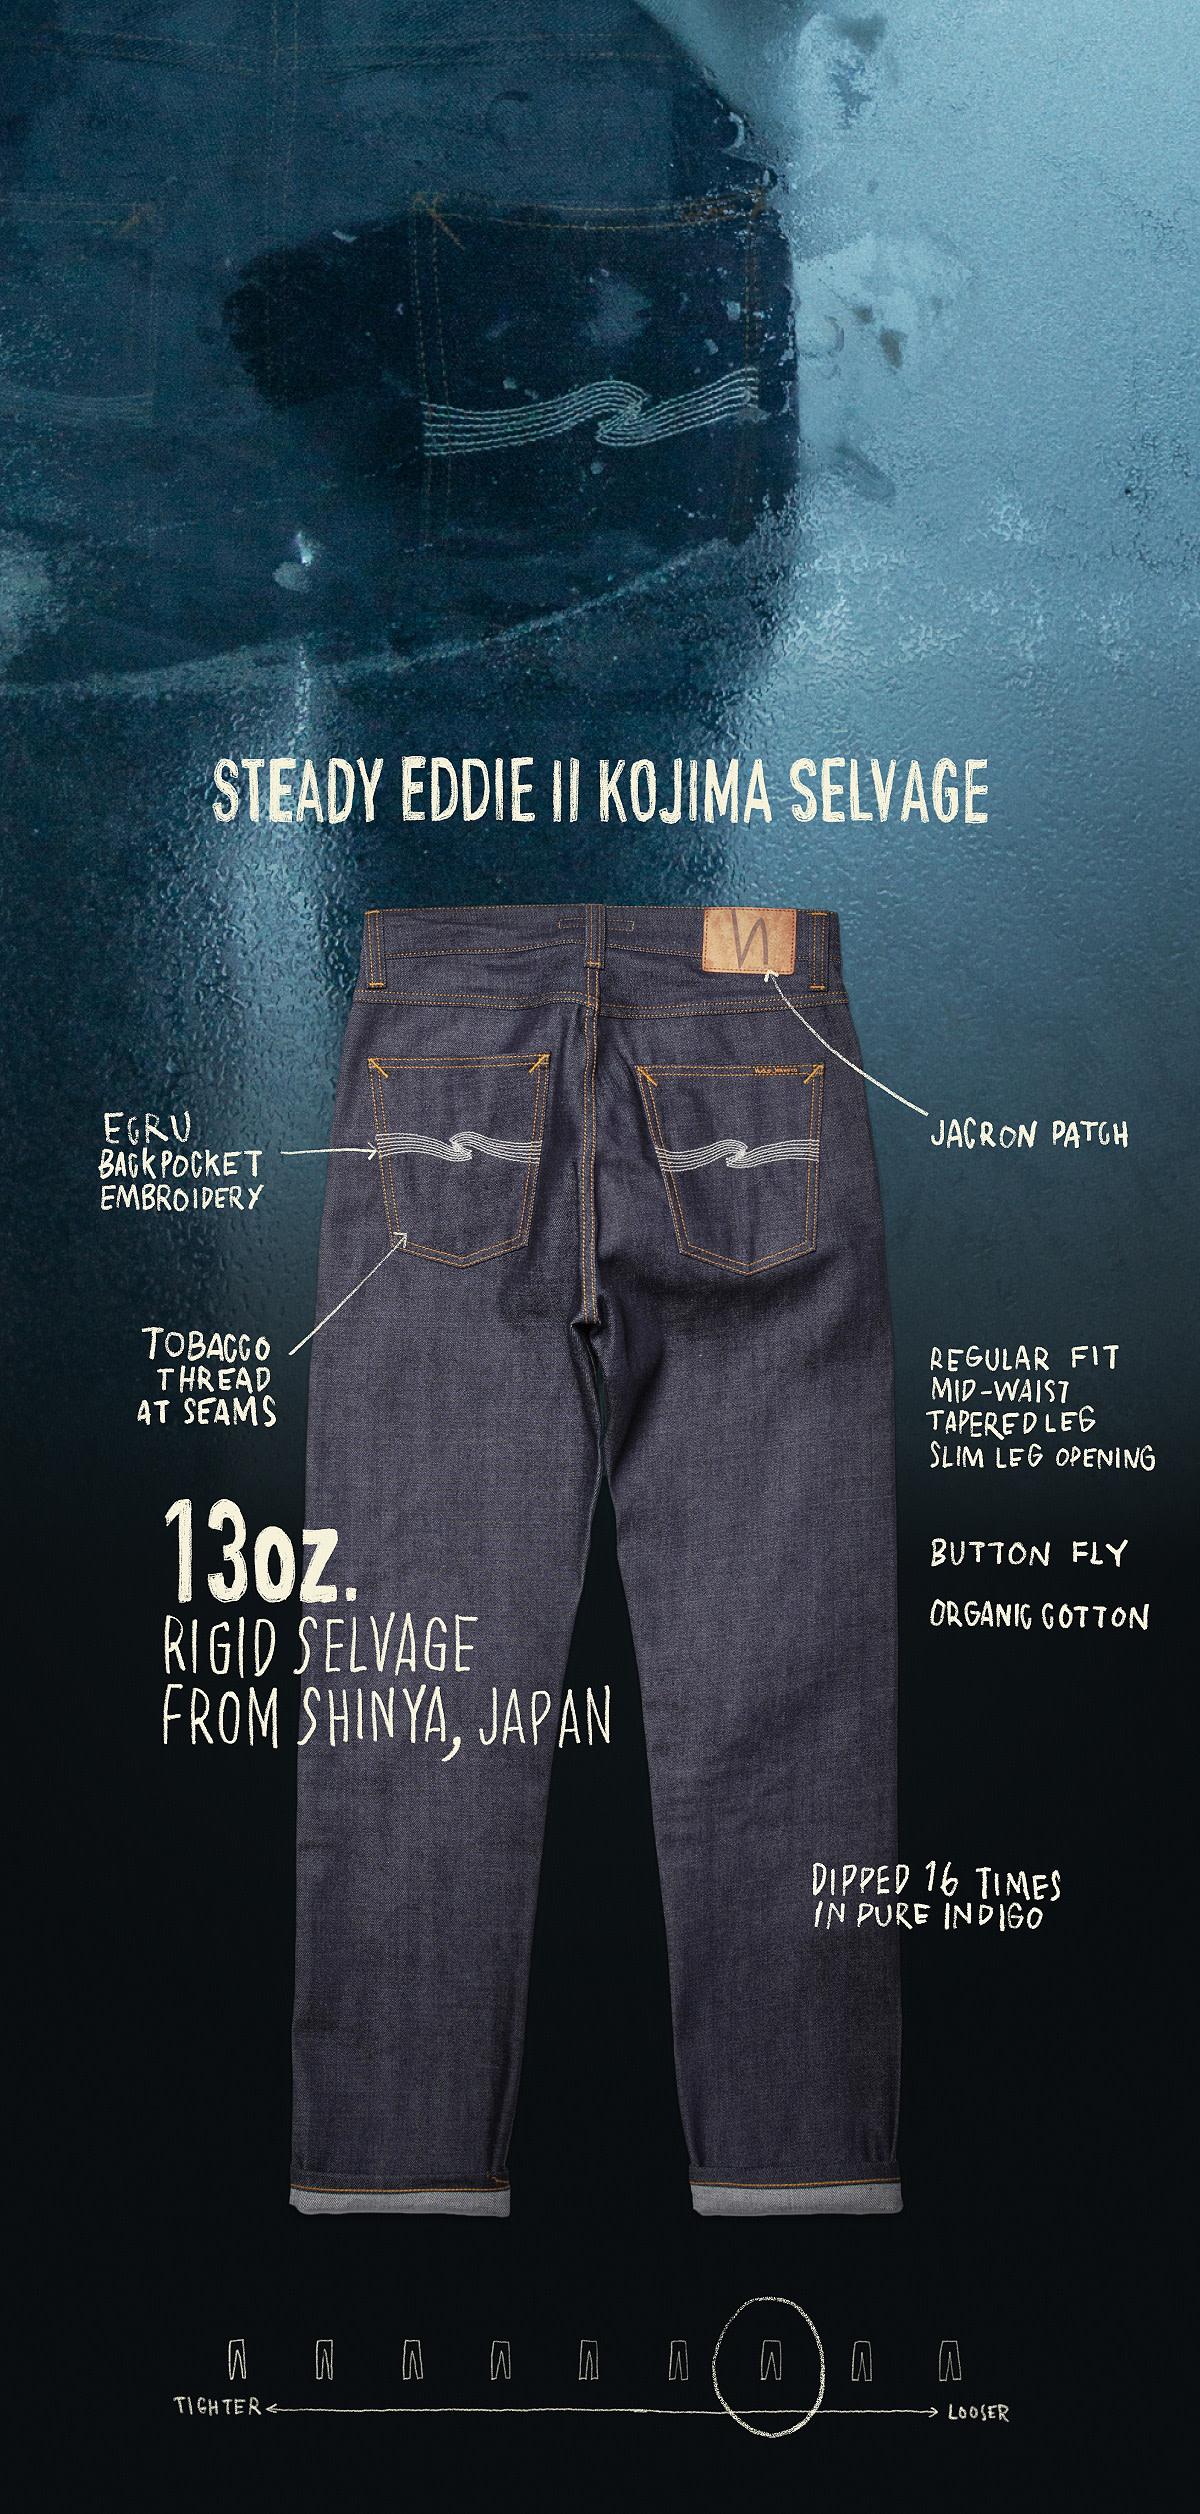 Steady Eddie II Kojima Selvage